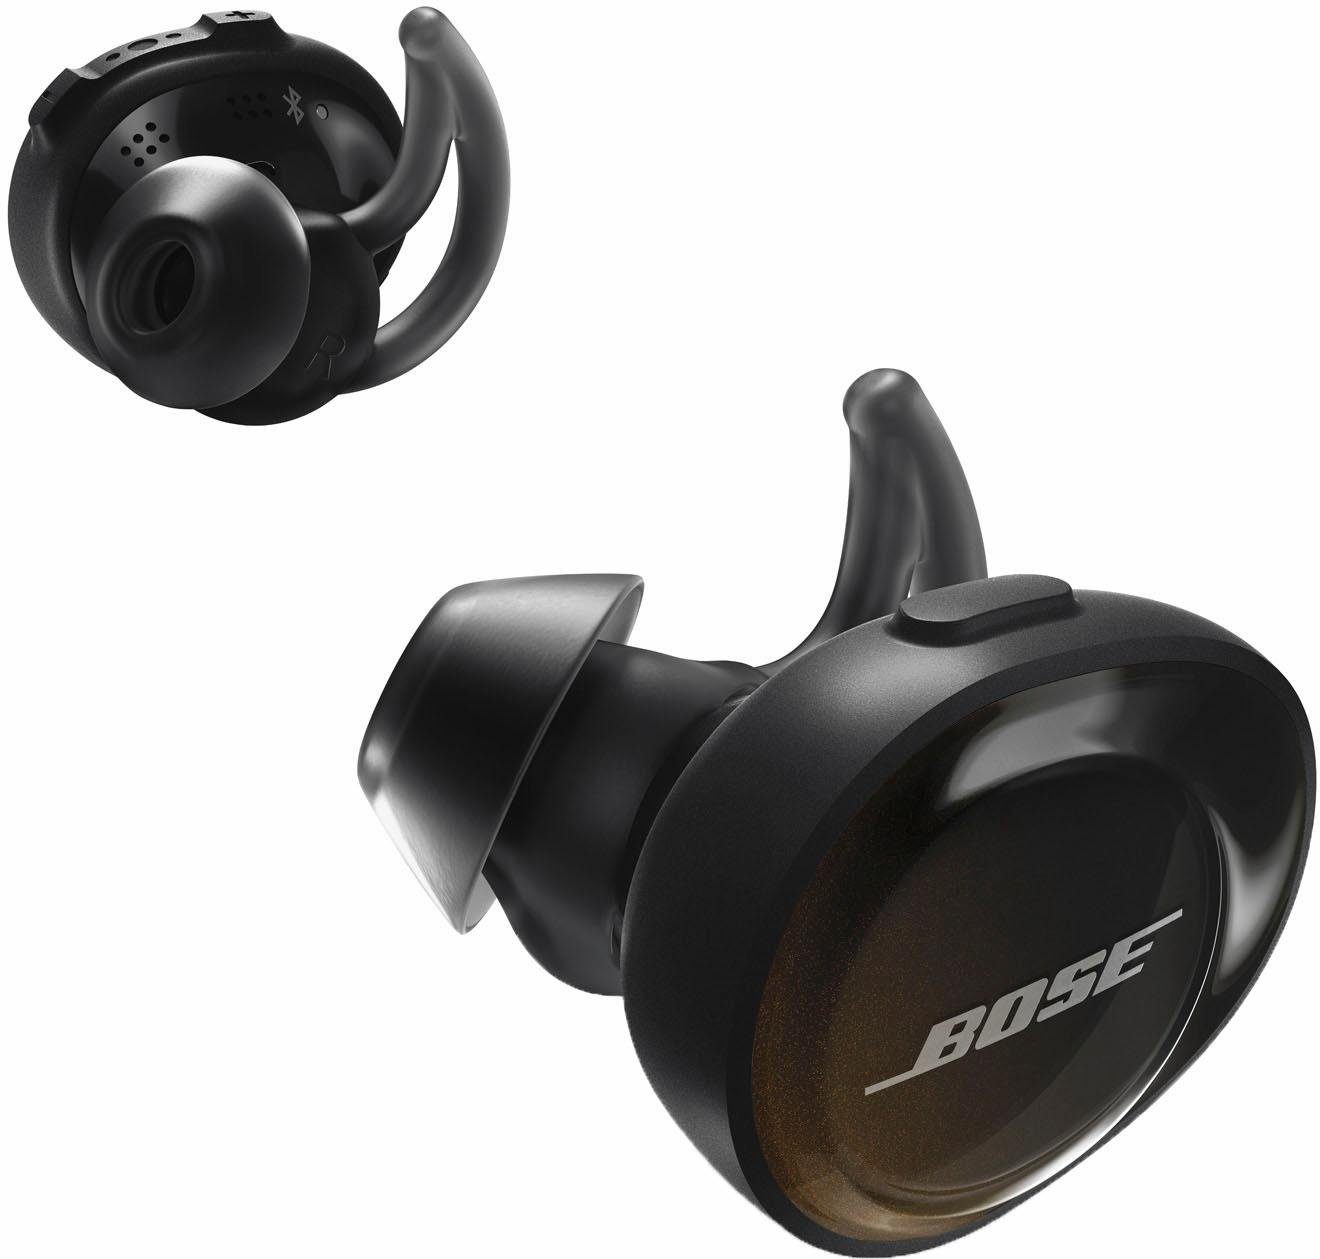 Bose »SoundSport Free®« wireless In-Ear-Kopfhörer | OTTO